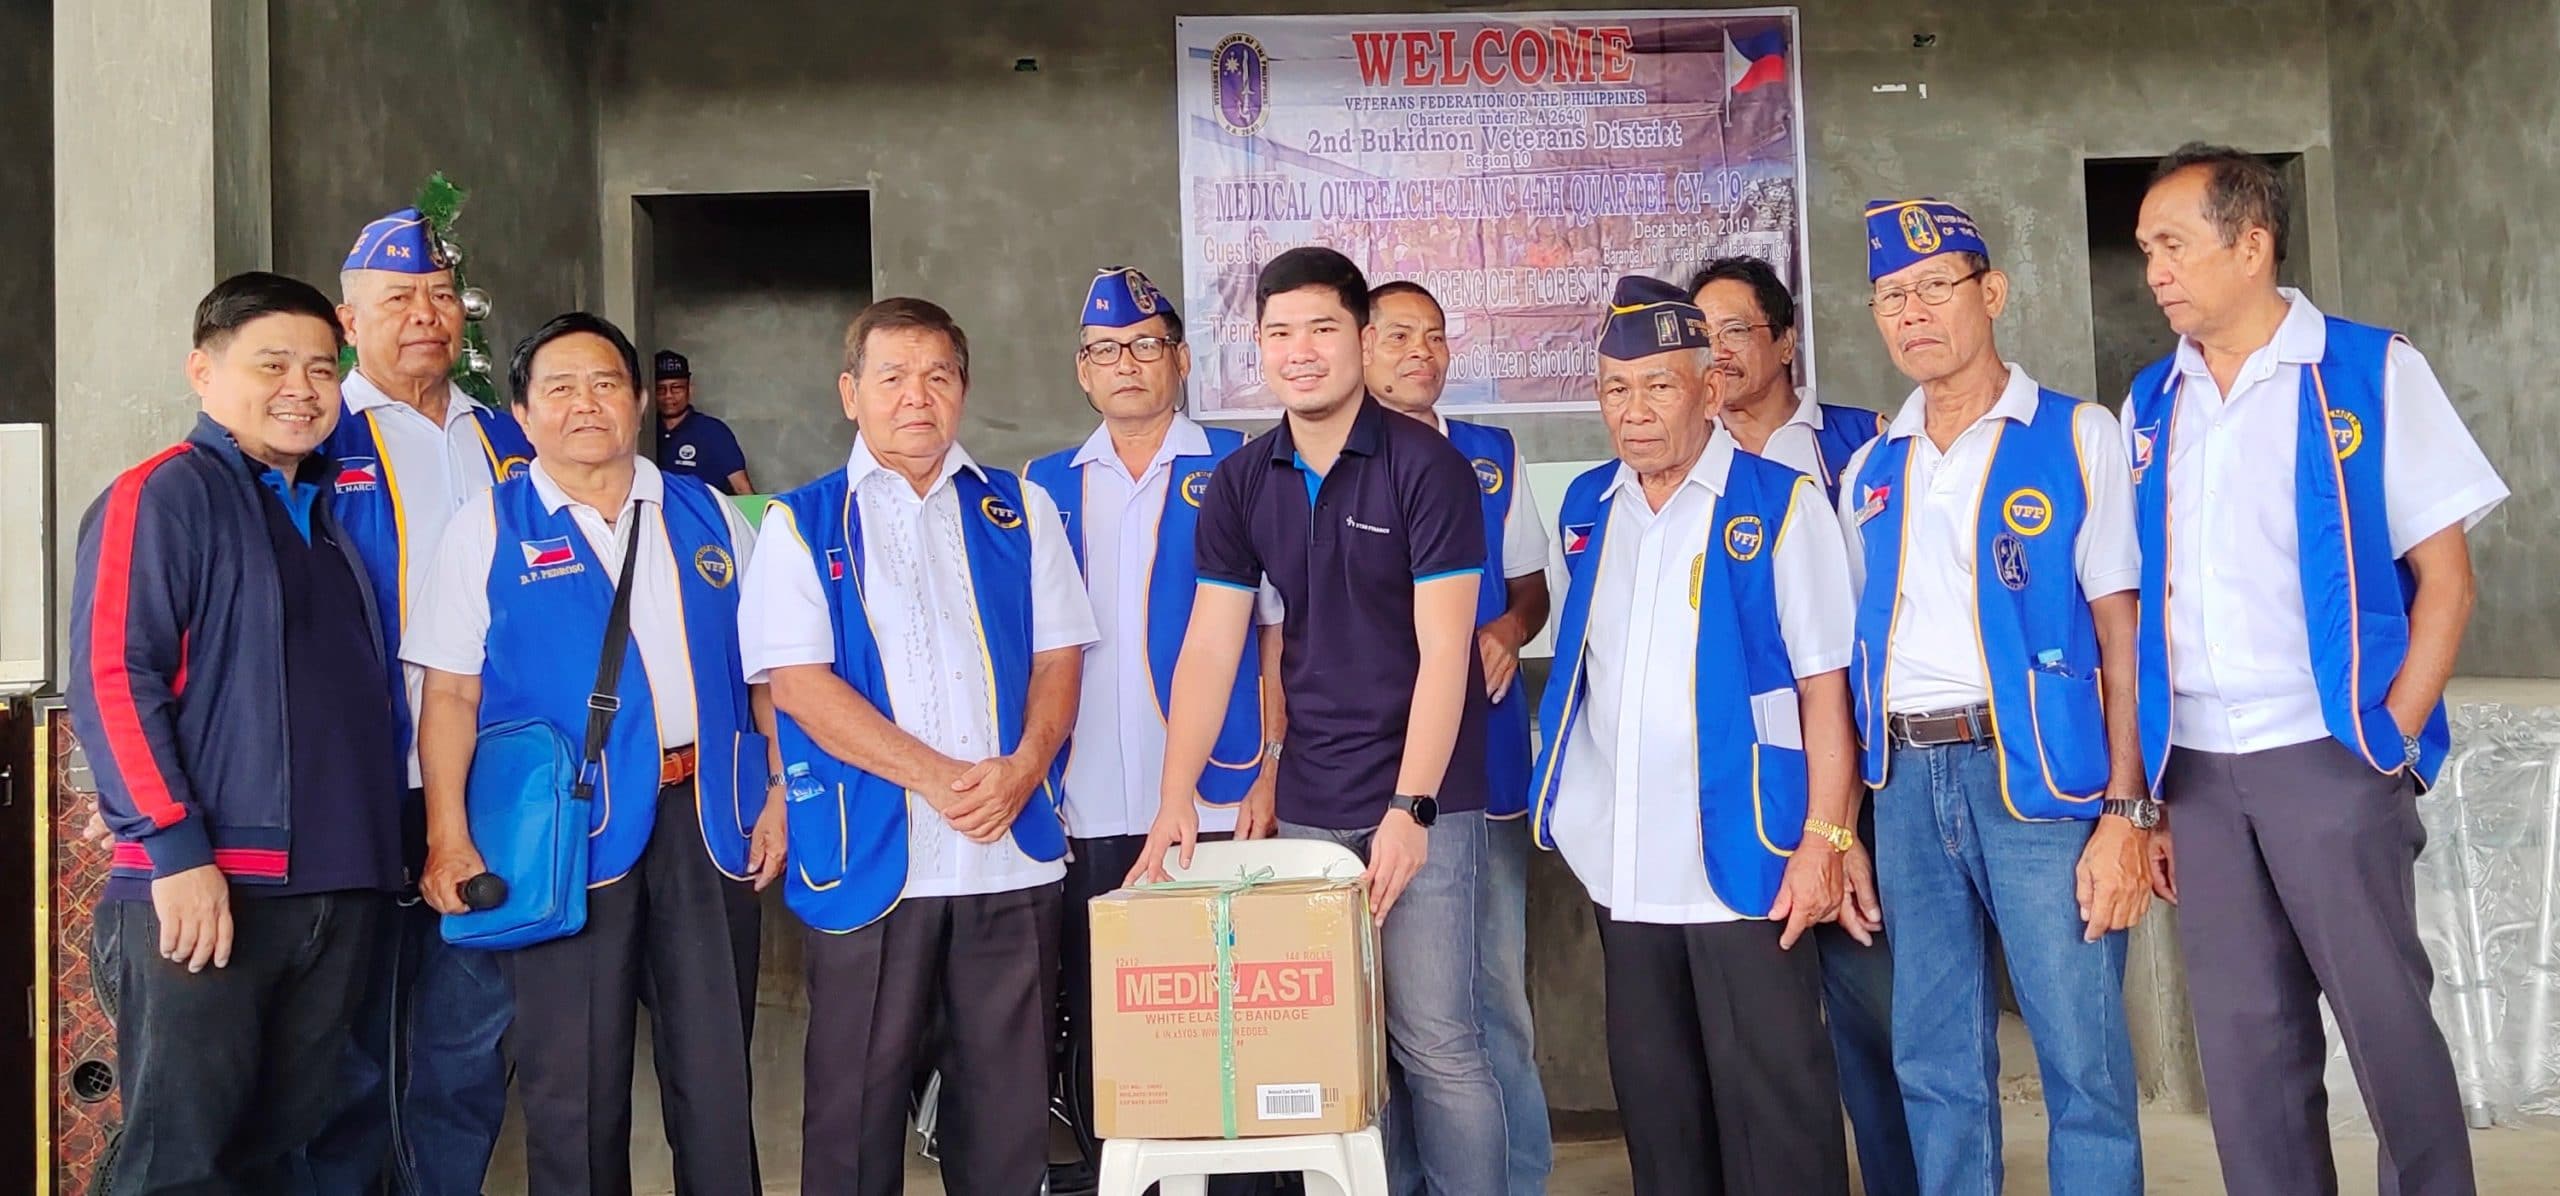 The 2nd Veterans District of Malaybalay Bukidnon Retirement Organization